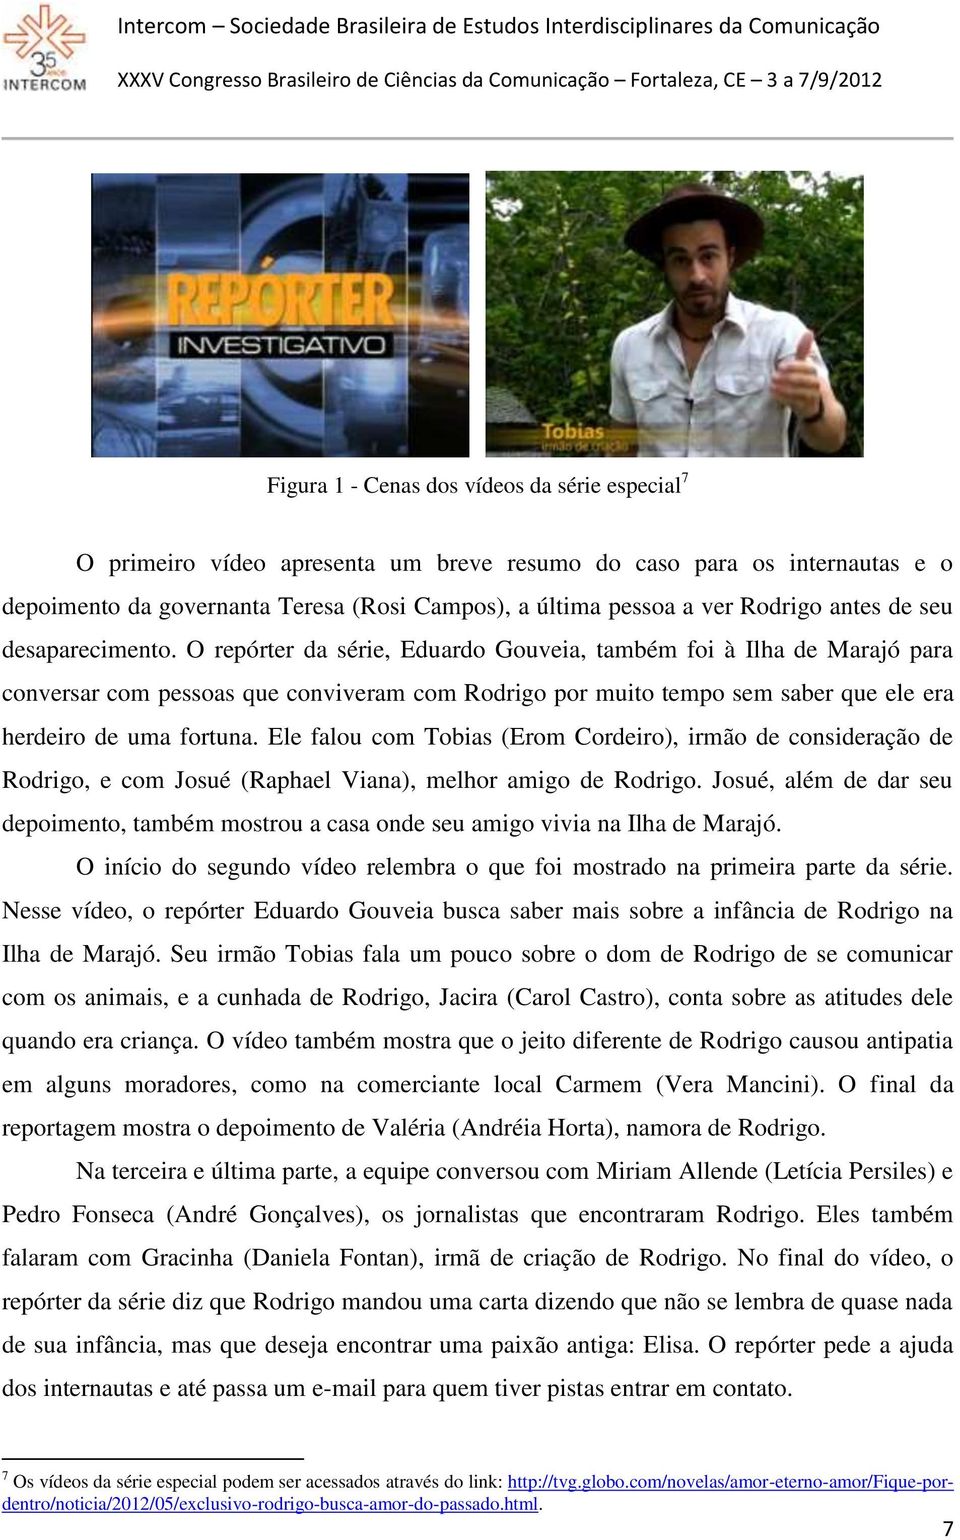 O repórter da série, Eduardo Gouveia, também foi à Ilha de Marajó para conversar com pessoas que conviveram com Rodrigo por muito tempo sem saber que ele era herdeiro de uma fortuna.